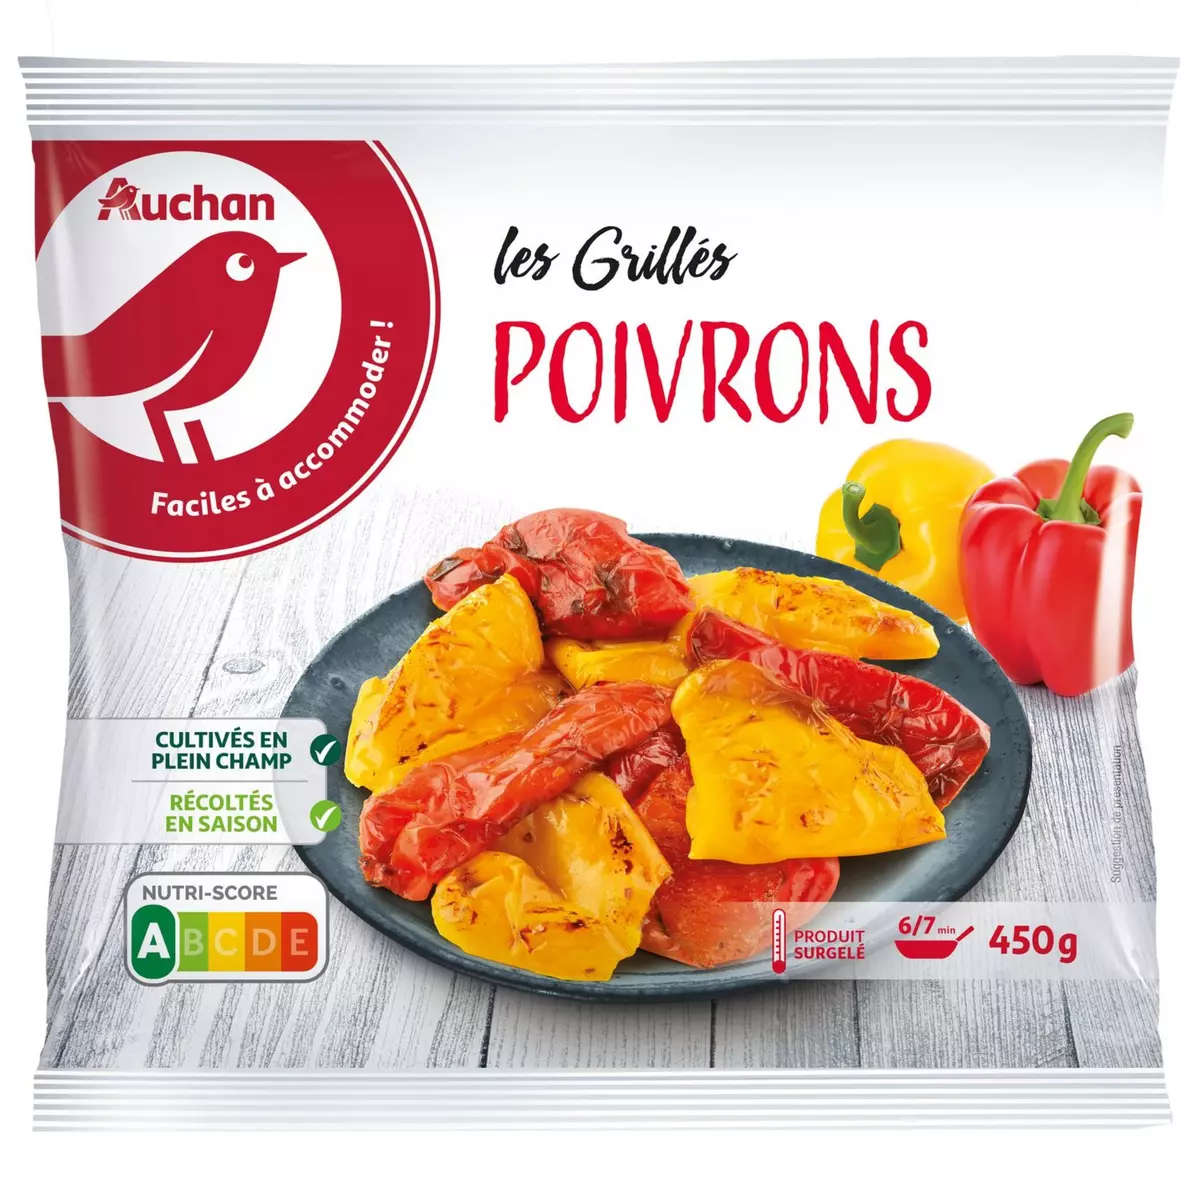 AUCHAN Poivrons grillés 3 portions 450g